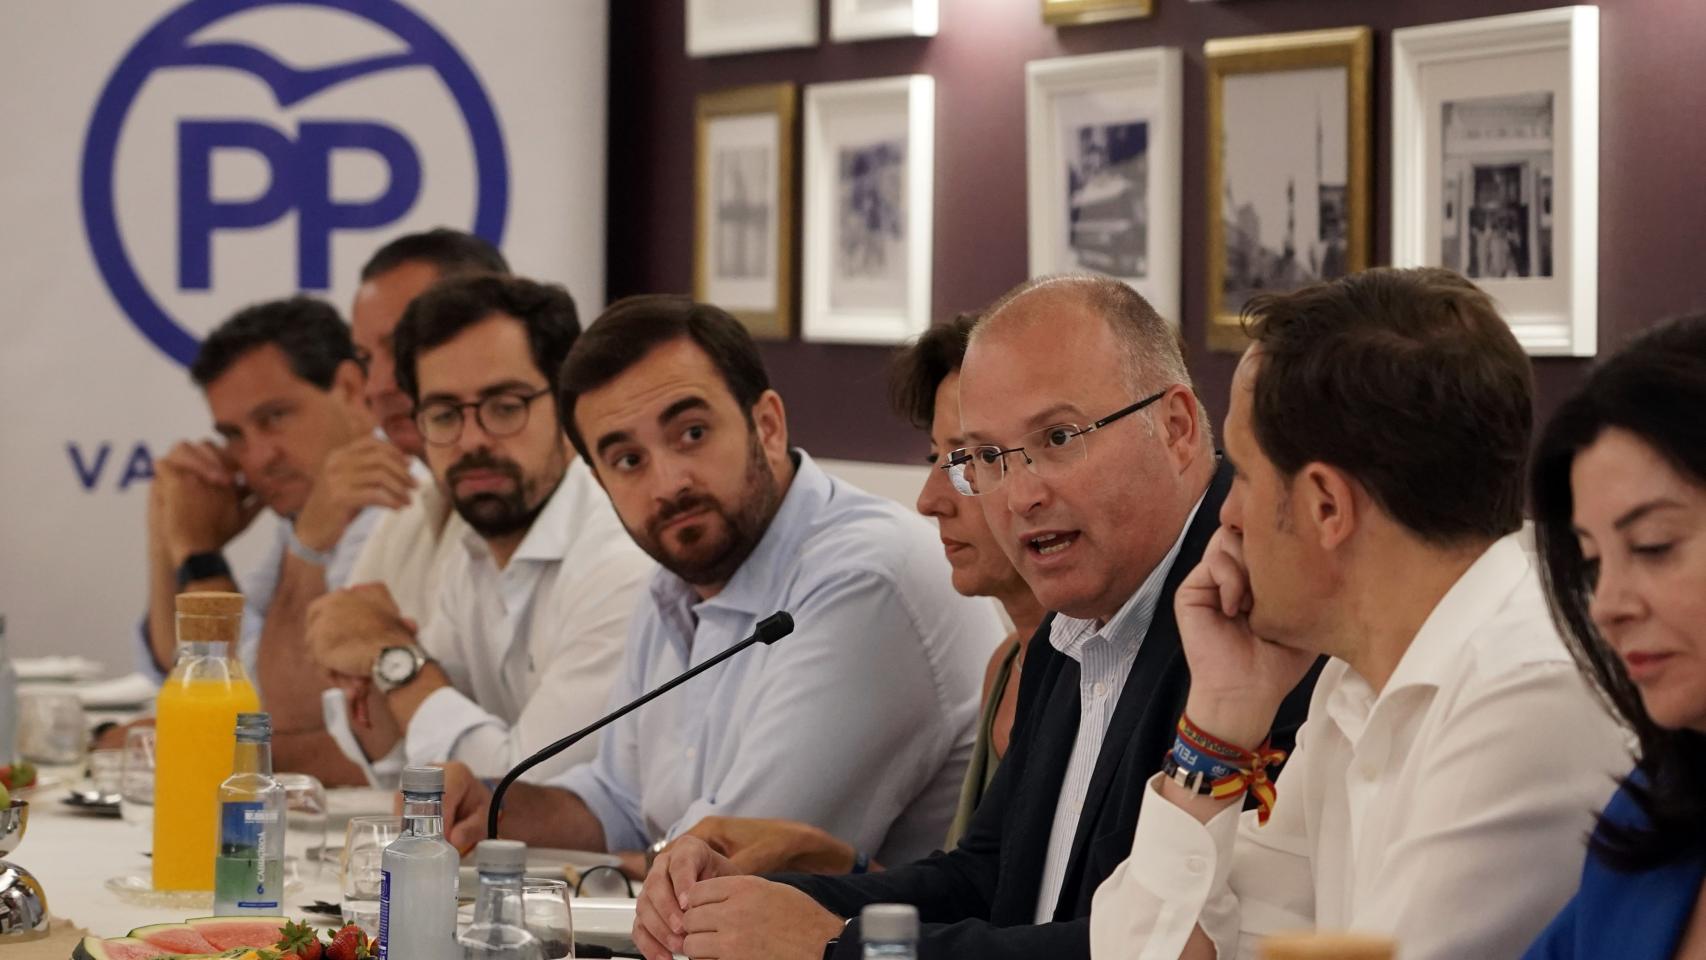 El vicesecretario de Organización del PP, Miguel Tellado, durante su intervención en Valladolid, este miércoles.